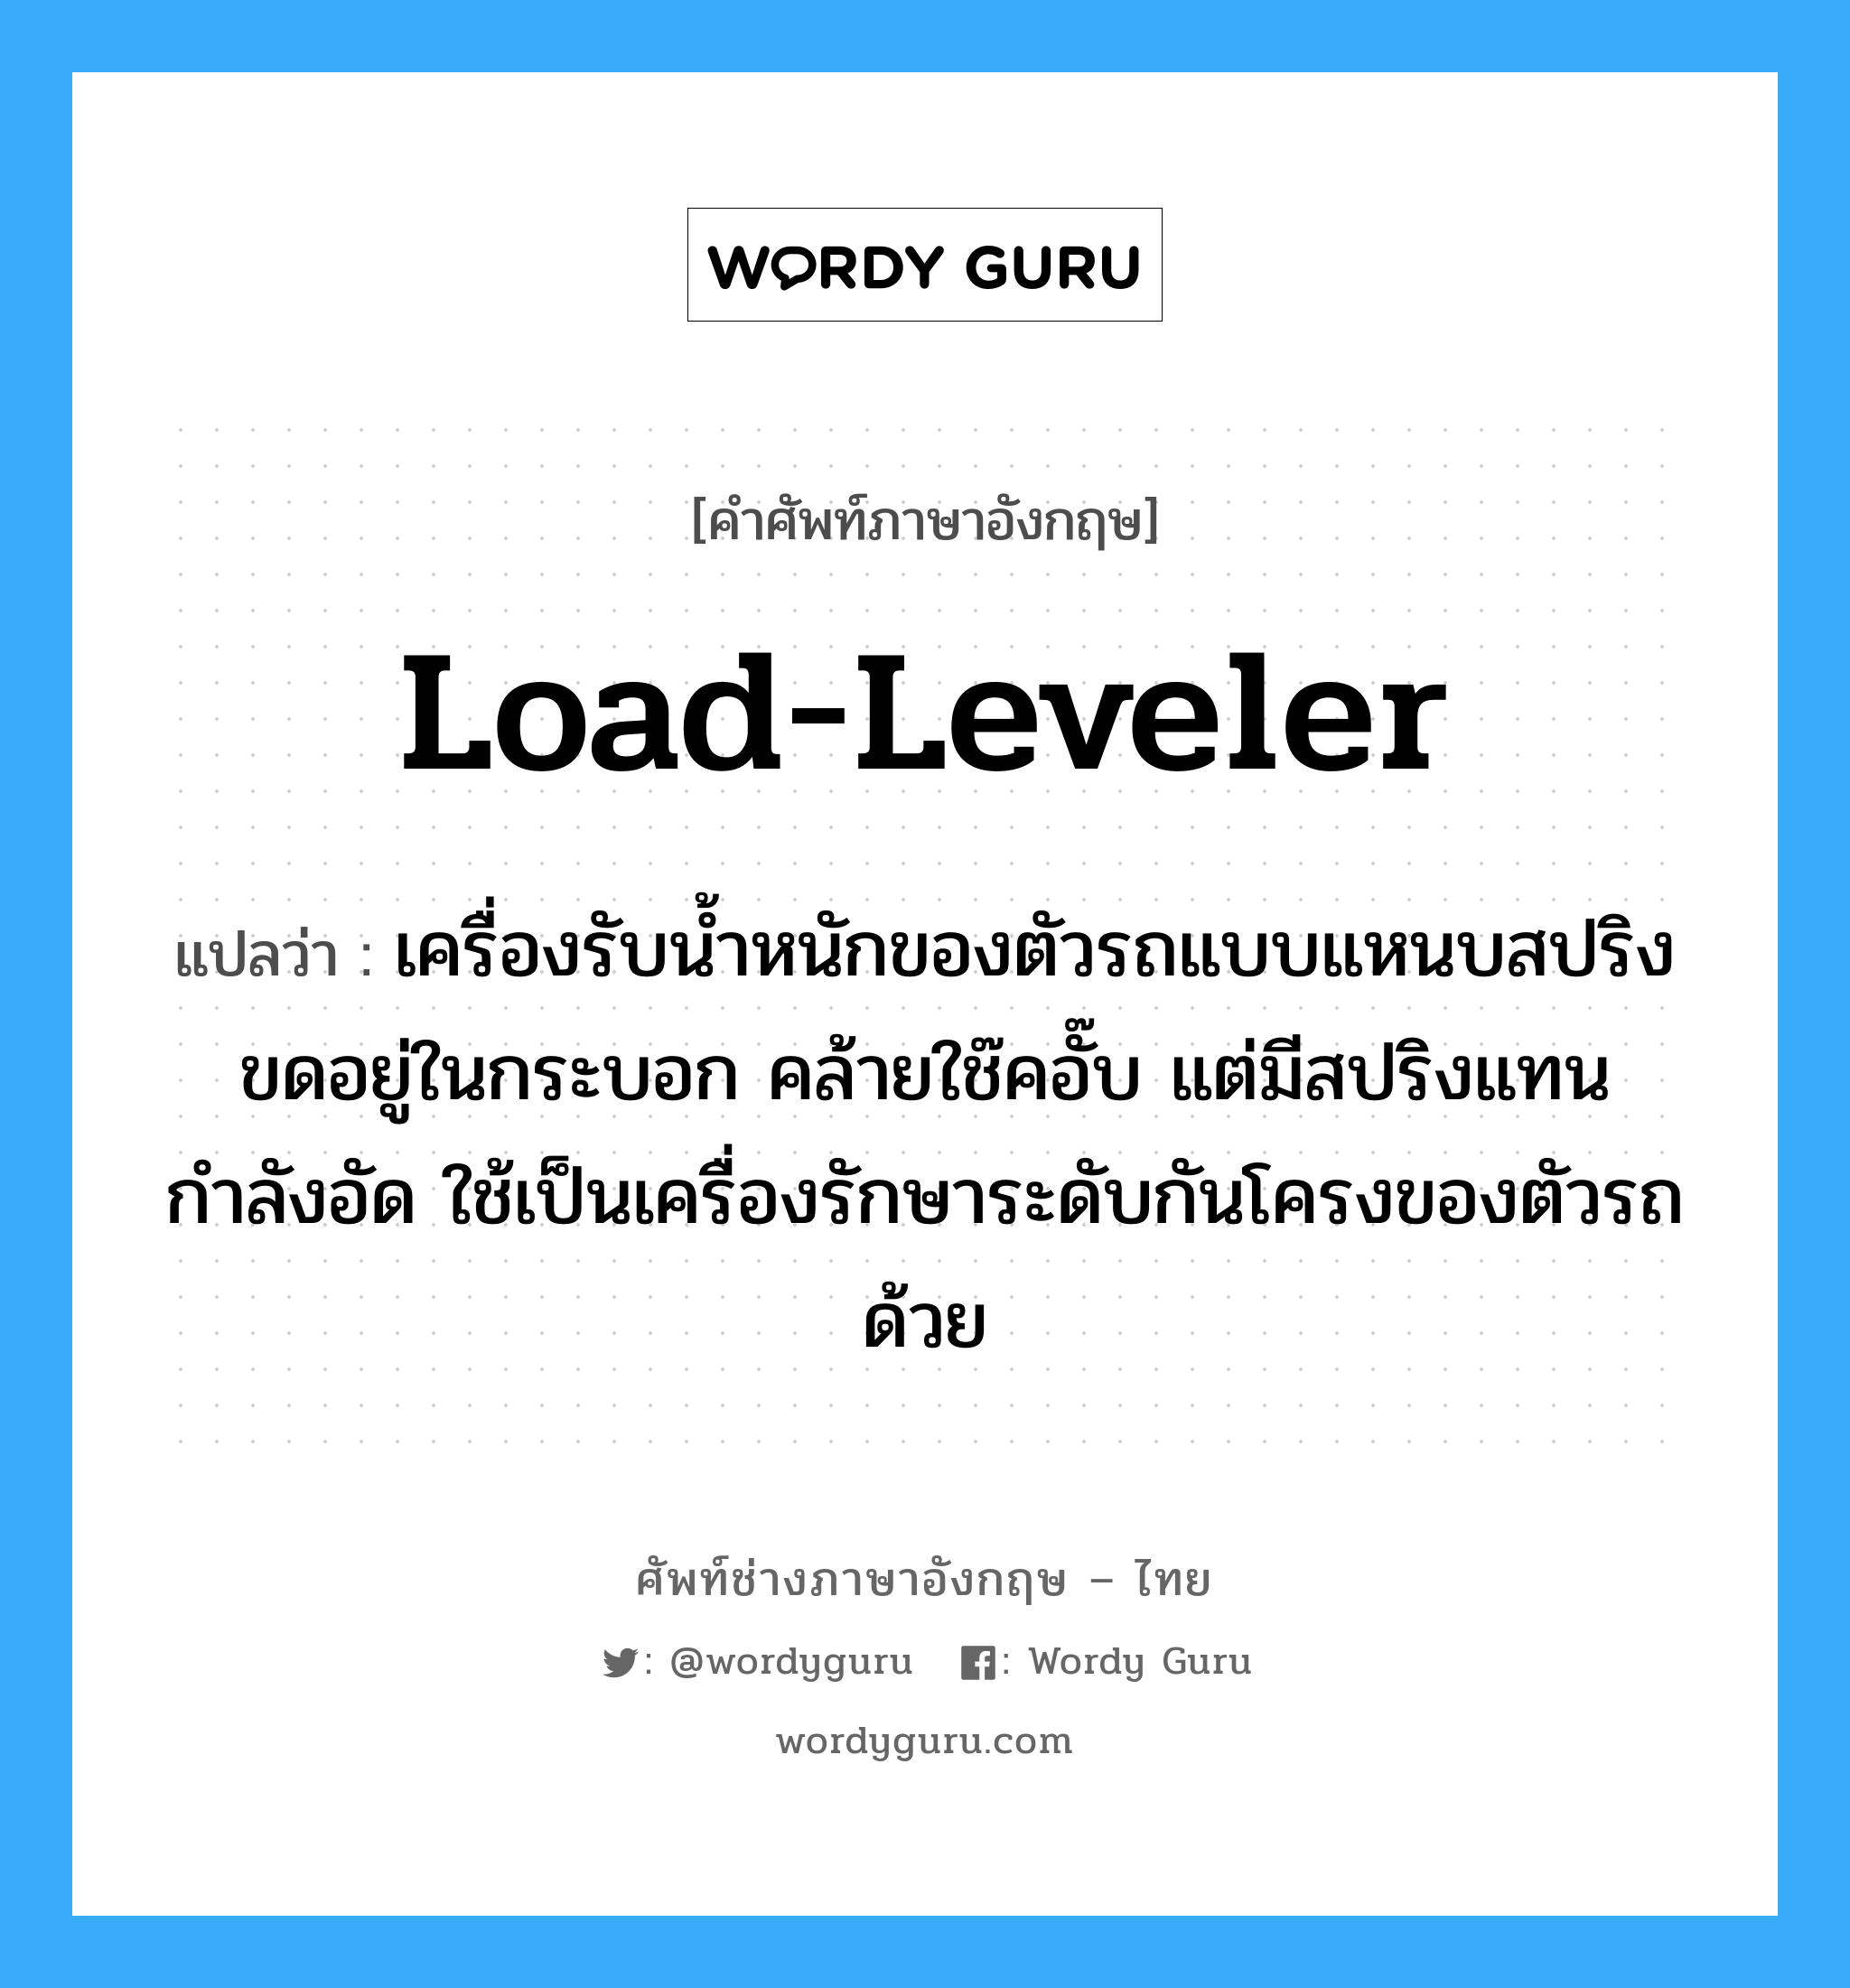 load-leveler แปลว่า?, คำศัพท์ช่างภาษาอังกฤษ - ไทย load-leveler คำศัพท์ภาษาอังกฤษ load-leveler แปลว่า เครื่องรับน้ำหนักของตัวรถแบบแหนบสปริงขดอยู่ในกระบอก คล้ายใช๊คอั๊บ แต่มีสปริงแทนกำลังอัด ใช้เป็นเครื่องรักษาระดับกันโครงของตัวรถด้วย